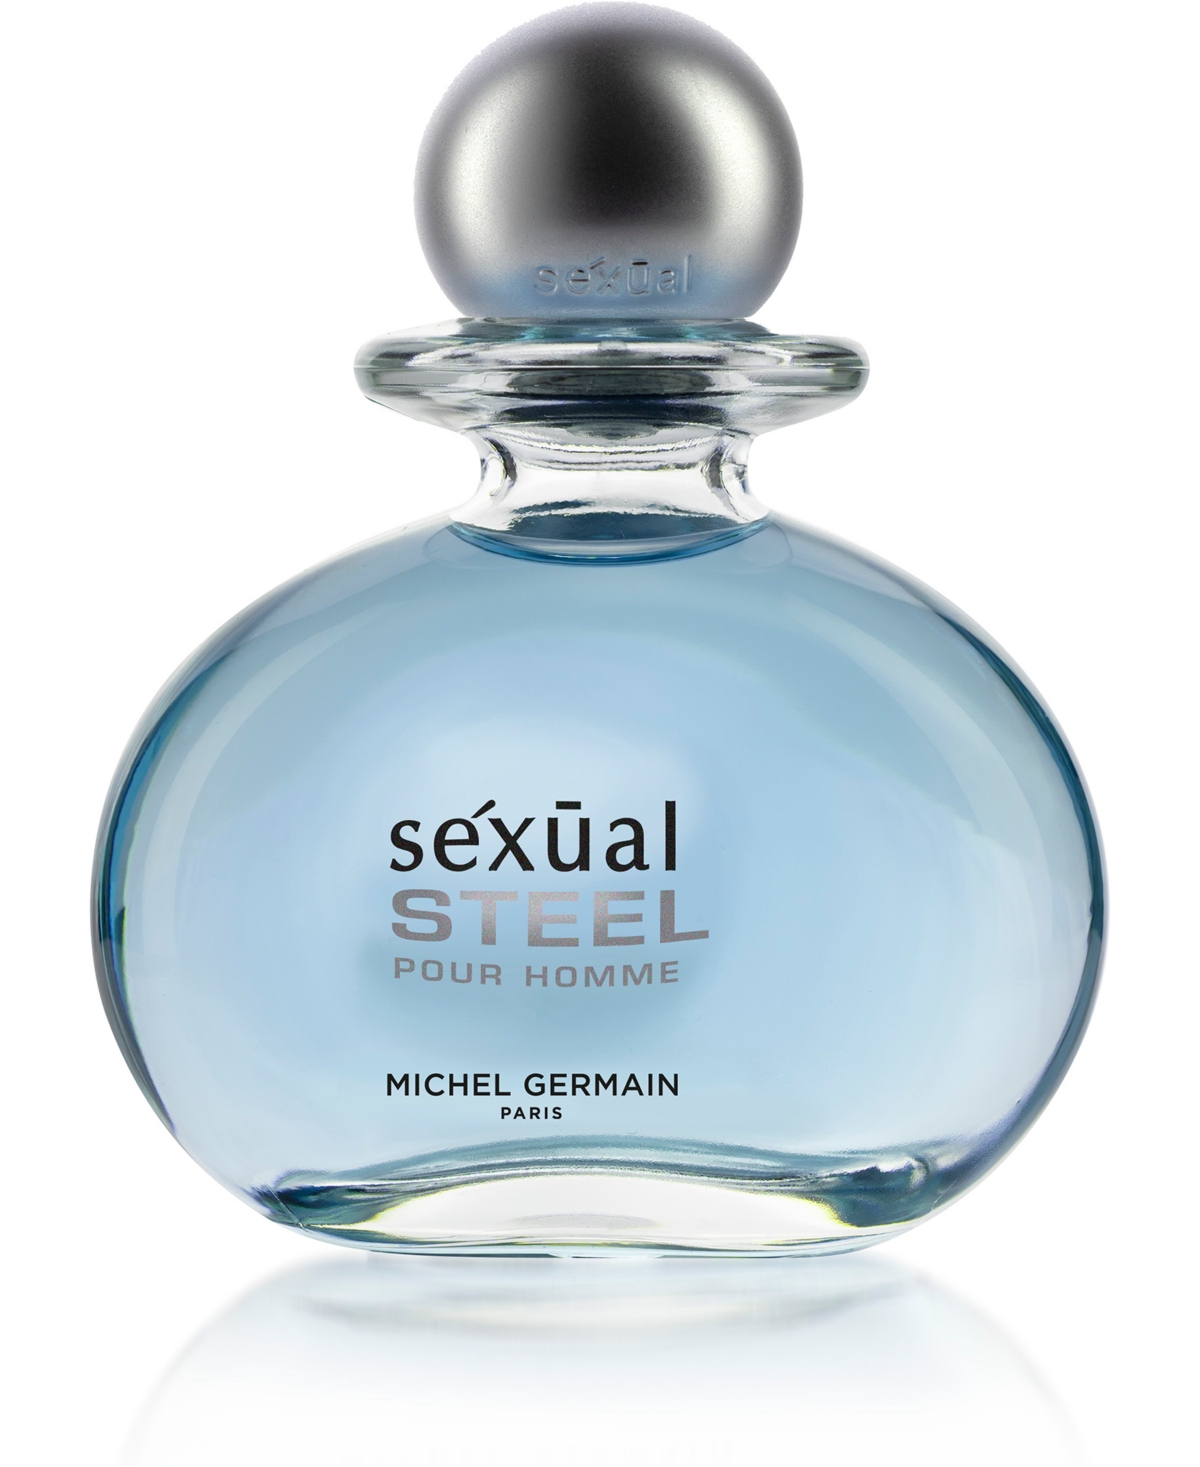 Michel Germain Men's Sexual Steel Pour Homme Eau de Toilette Spray, 2.5-oz.